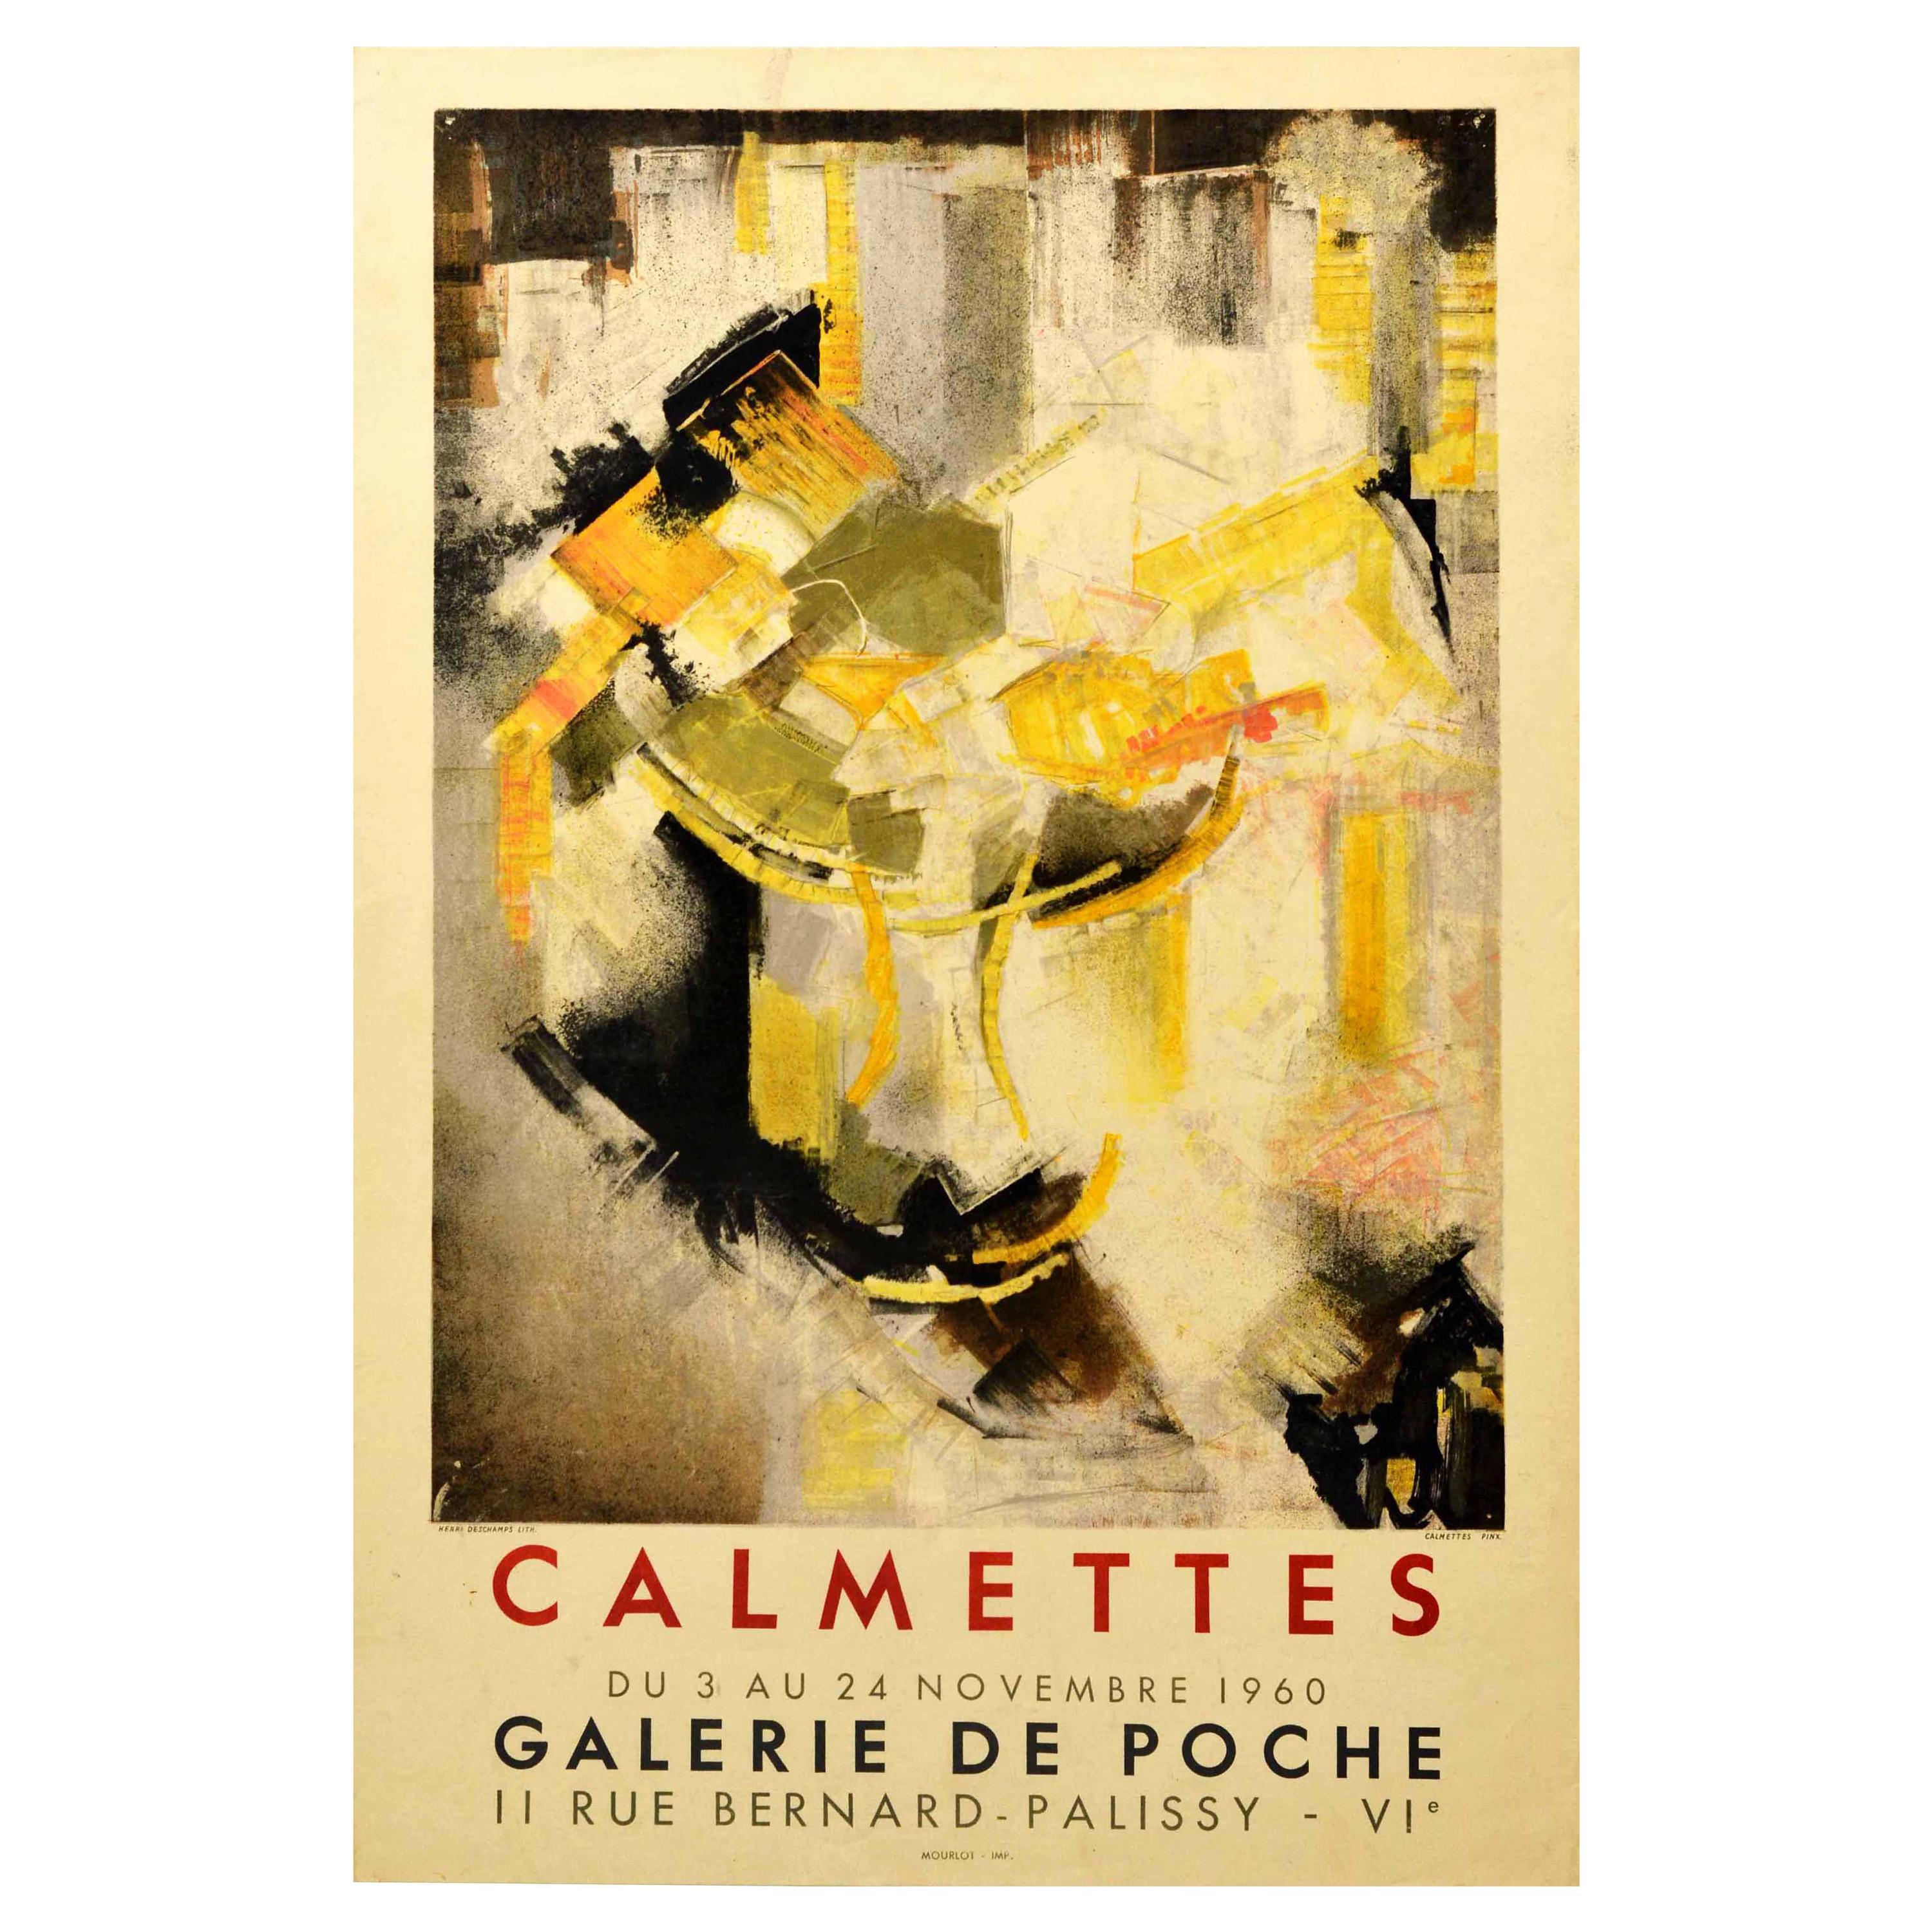 Original Vintage Exhibition Poster Abstract Artist JM Calmettes Galerie De Poche